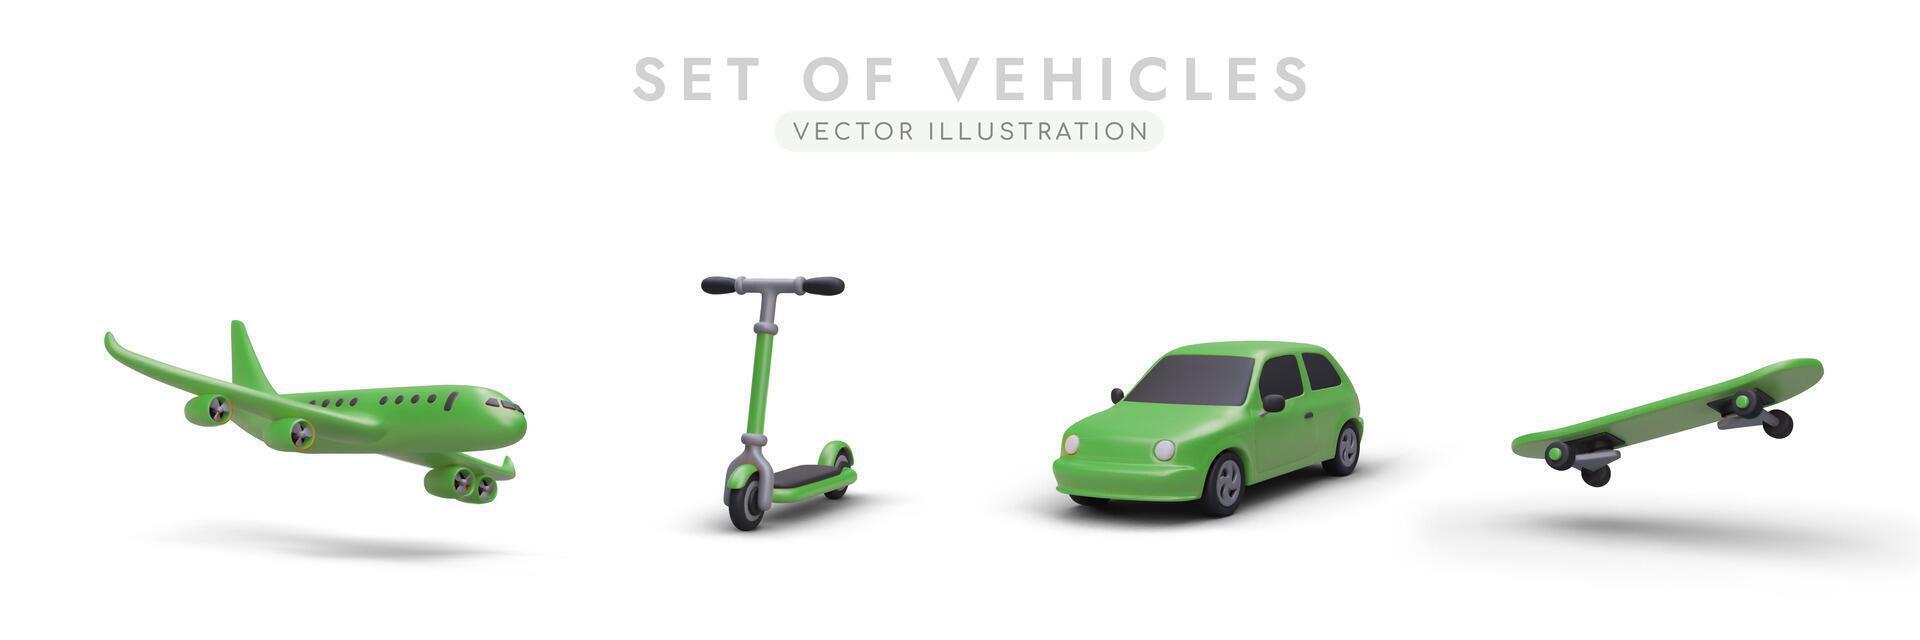 uppsättning av vektor 3d bilder av grön Färg. realistisk flygplan, skoter, bil, skateboard med skuggor